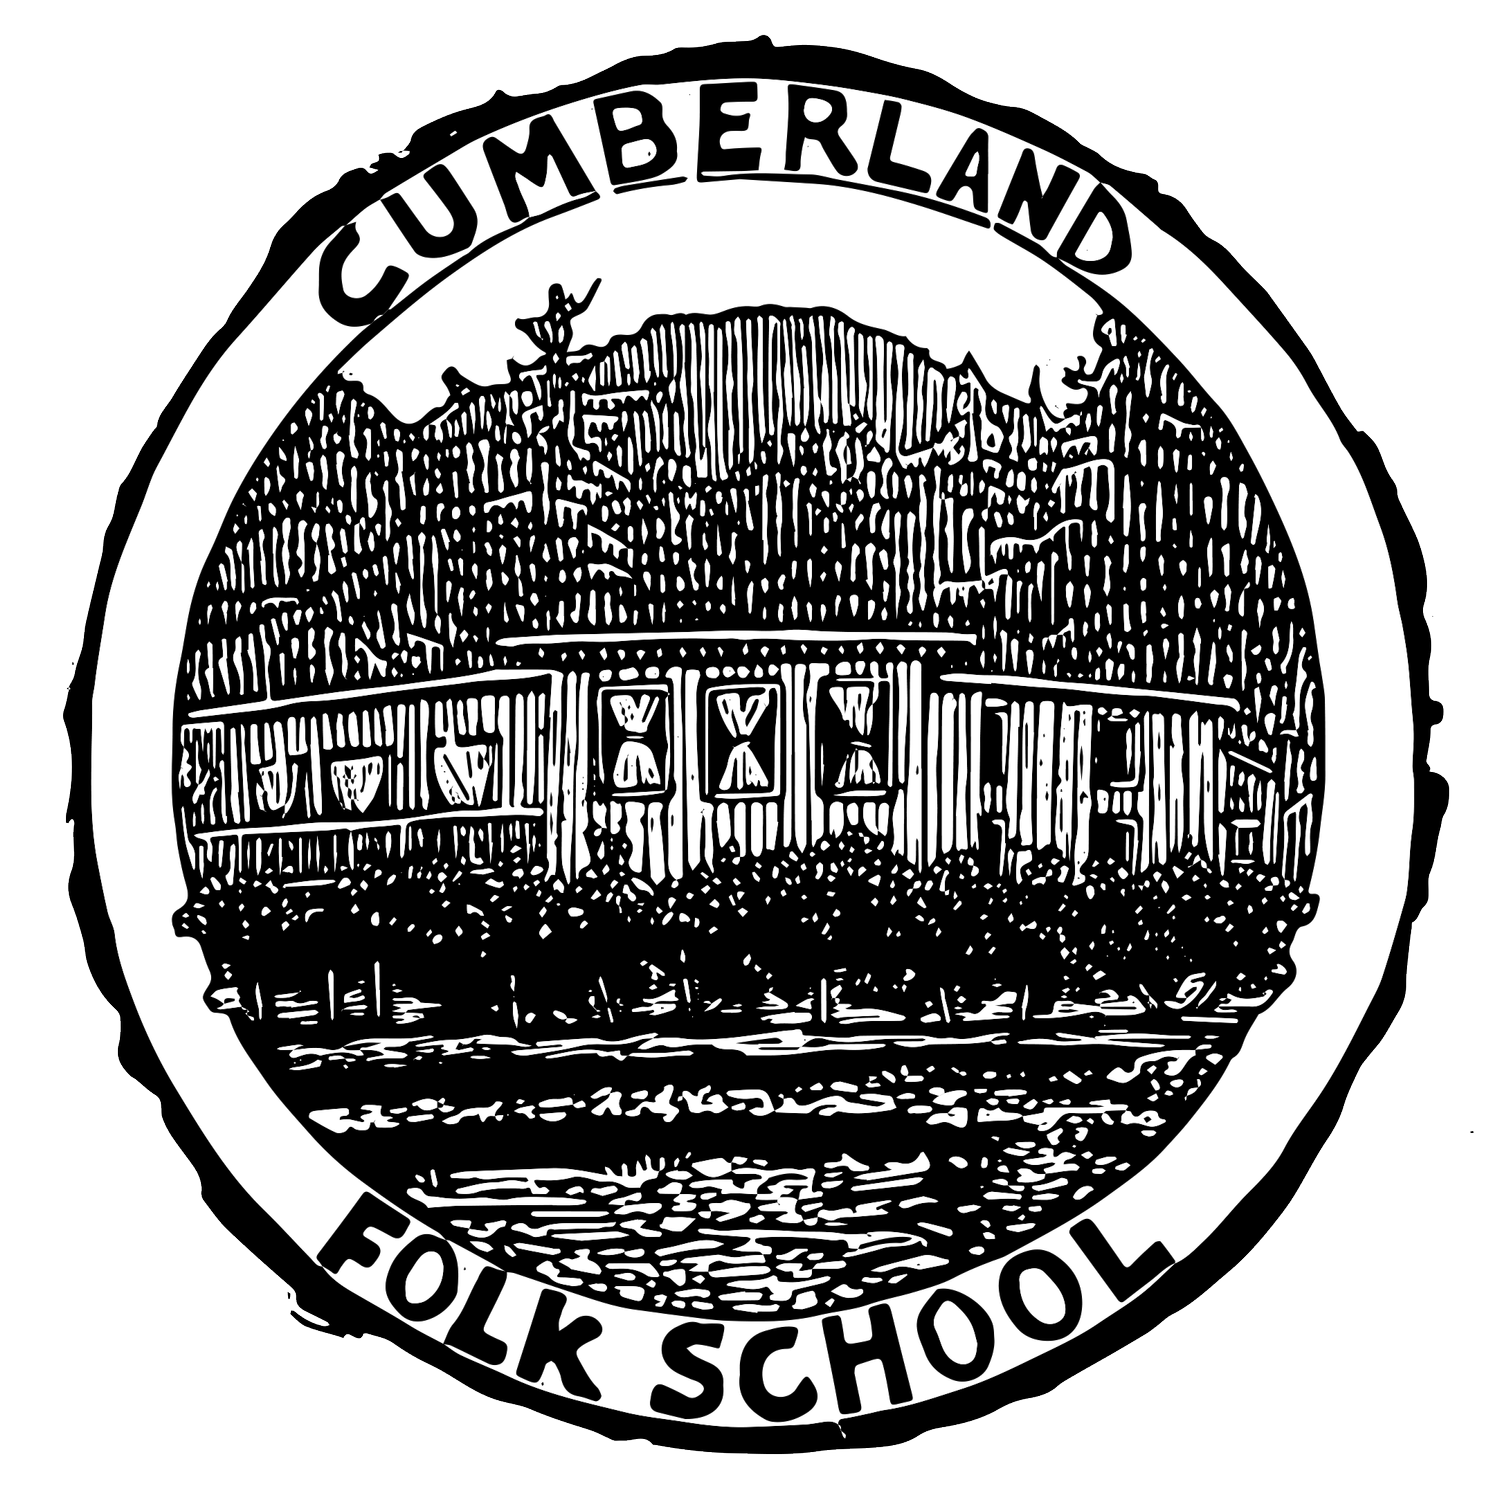 Cumberland Folk School